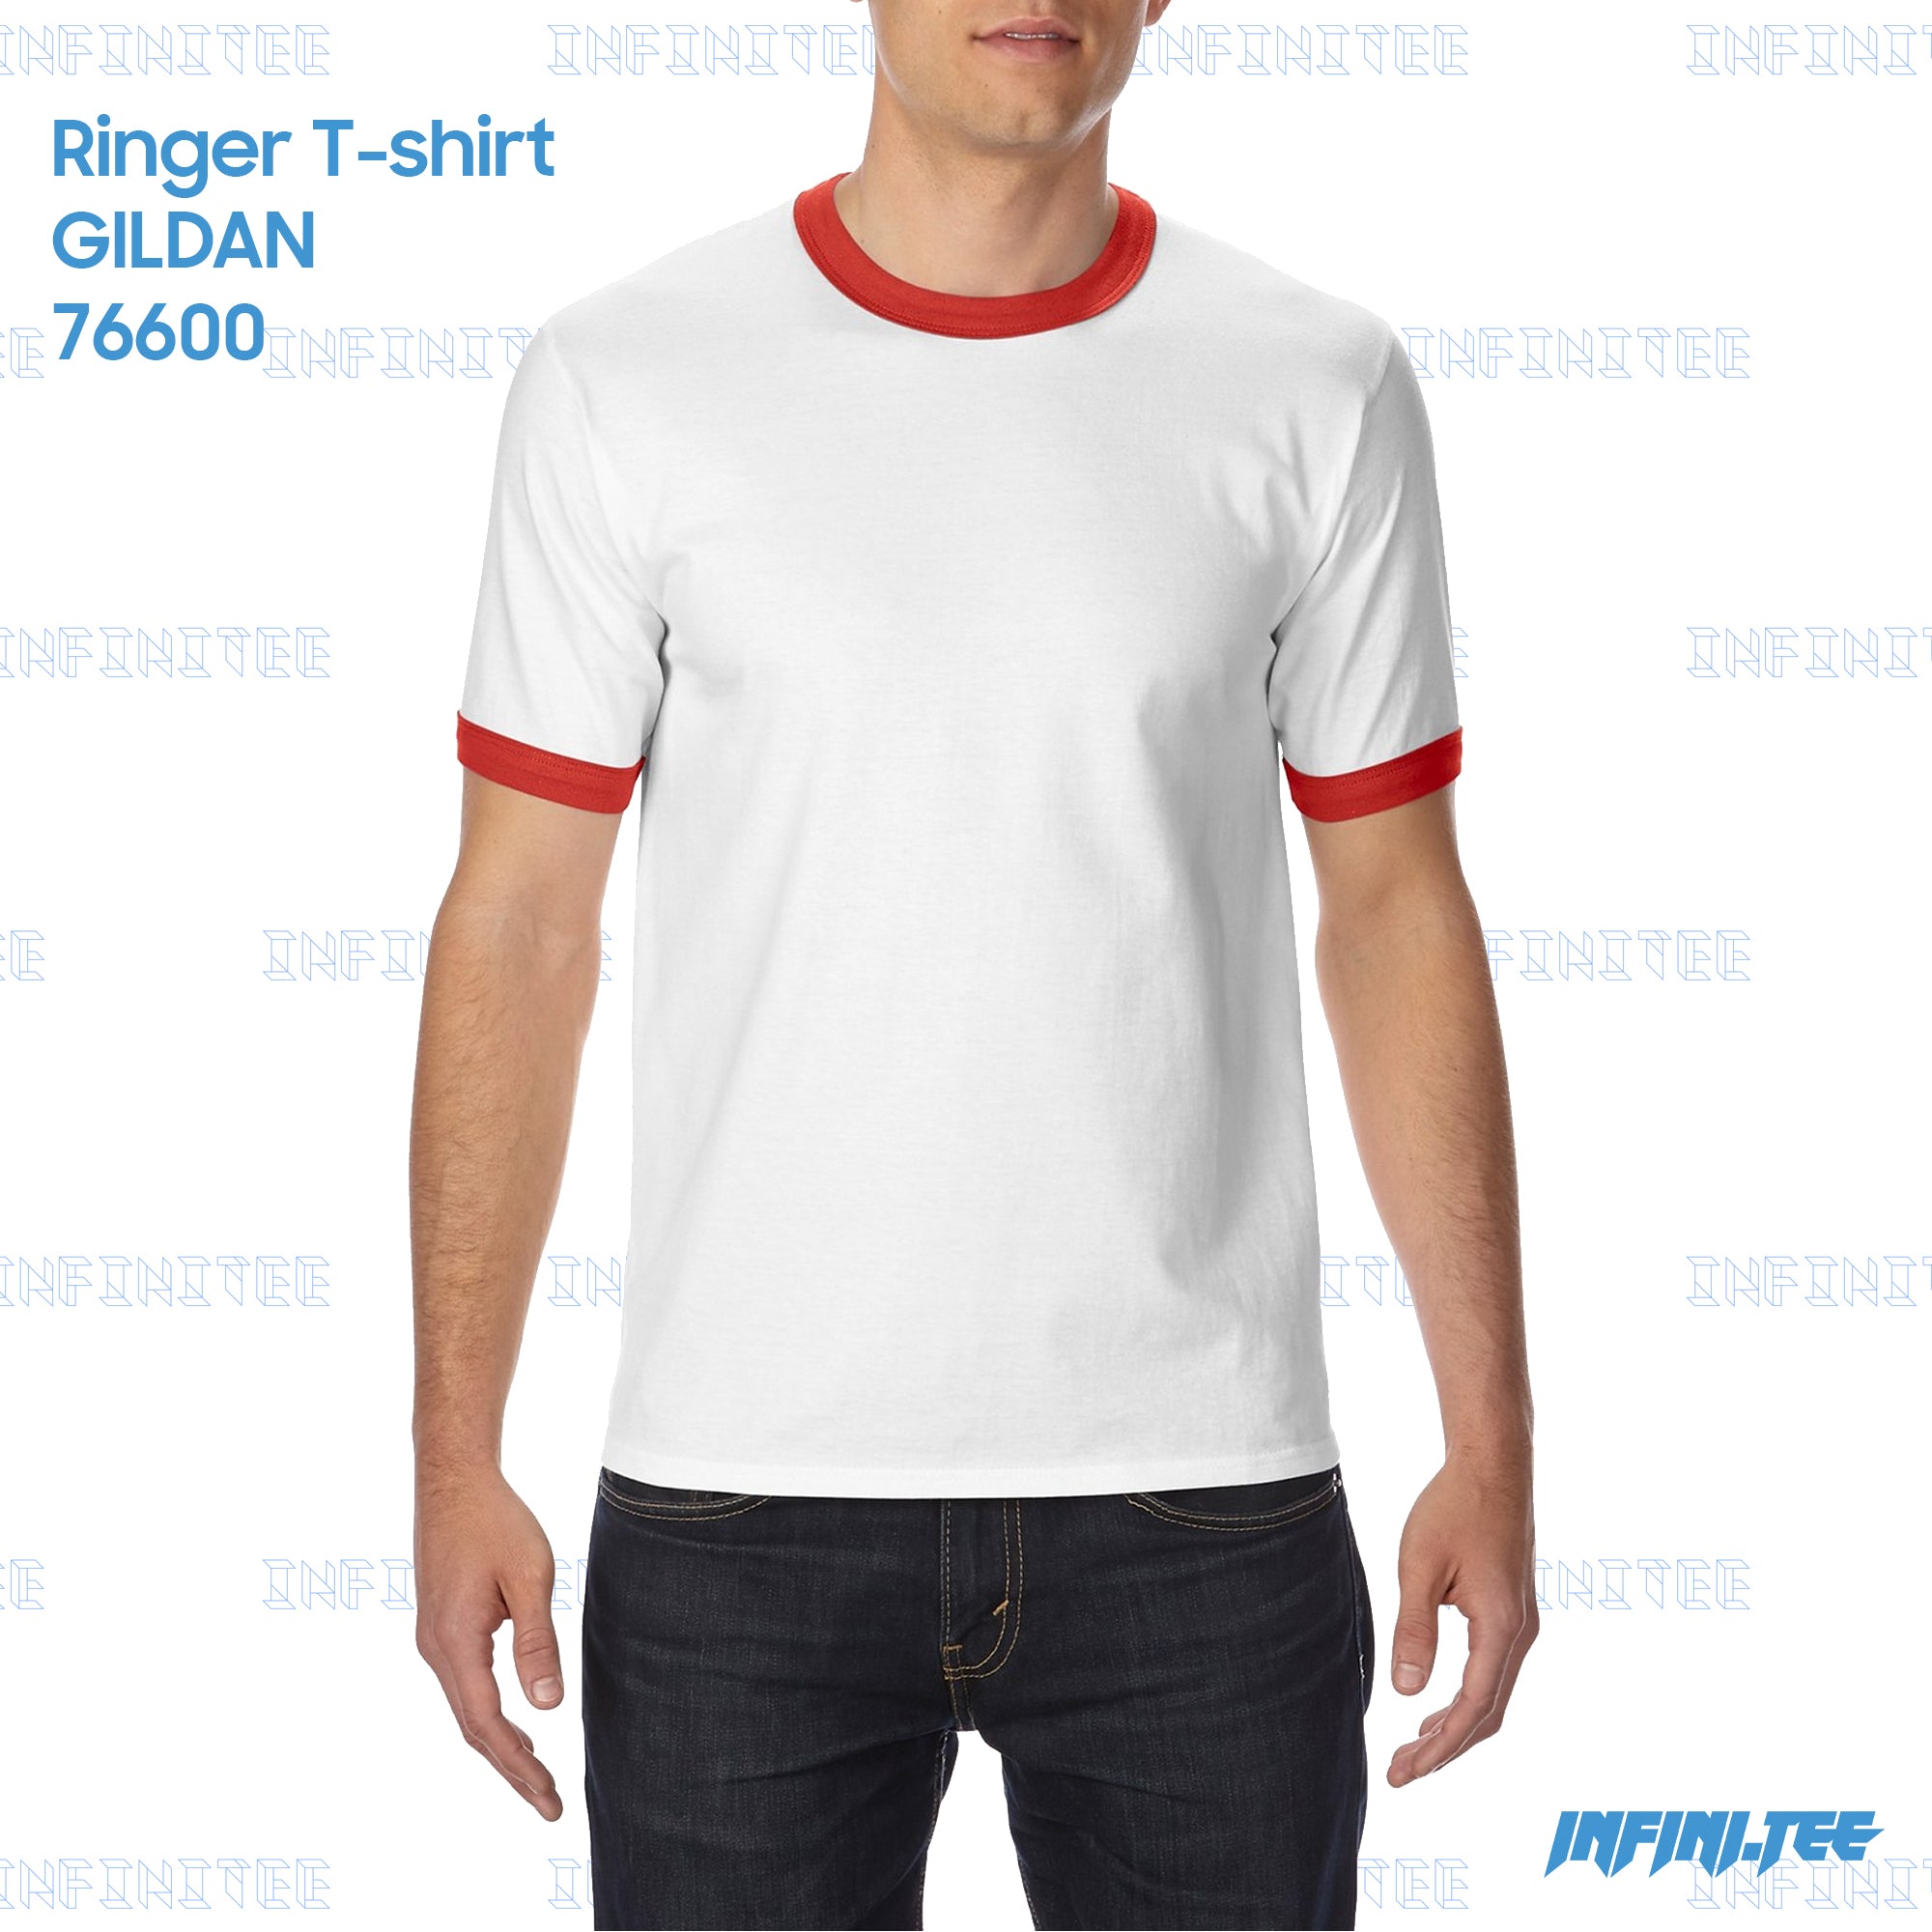 RINGER T-shirt 76600 GILDAN - WHITE/RED